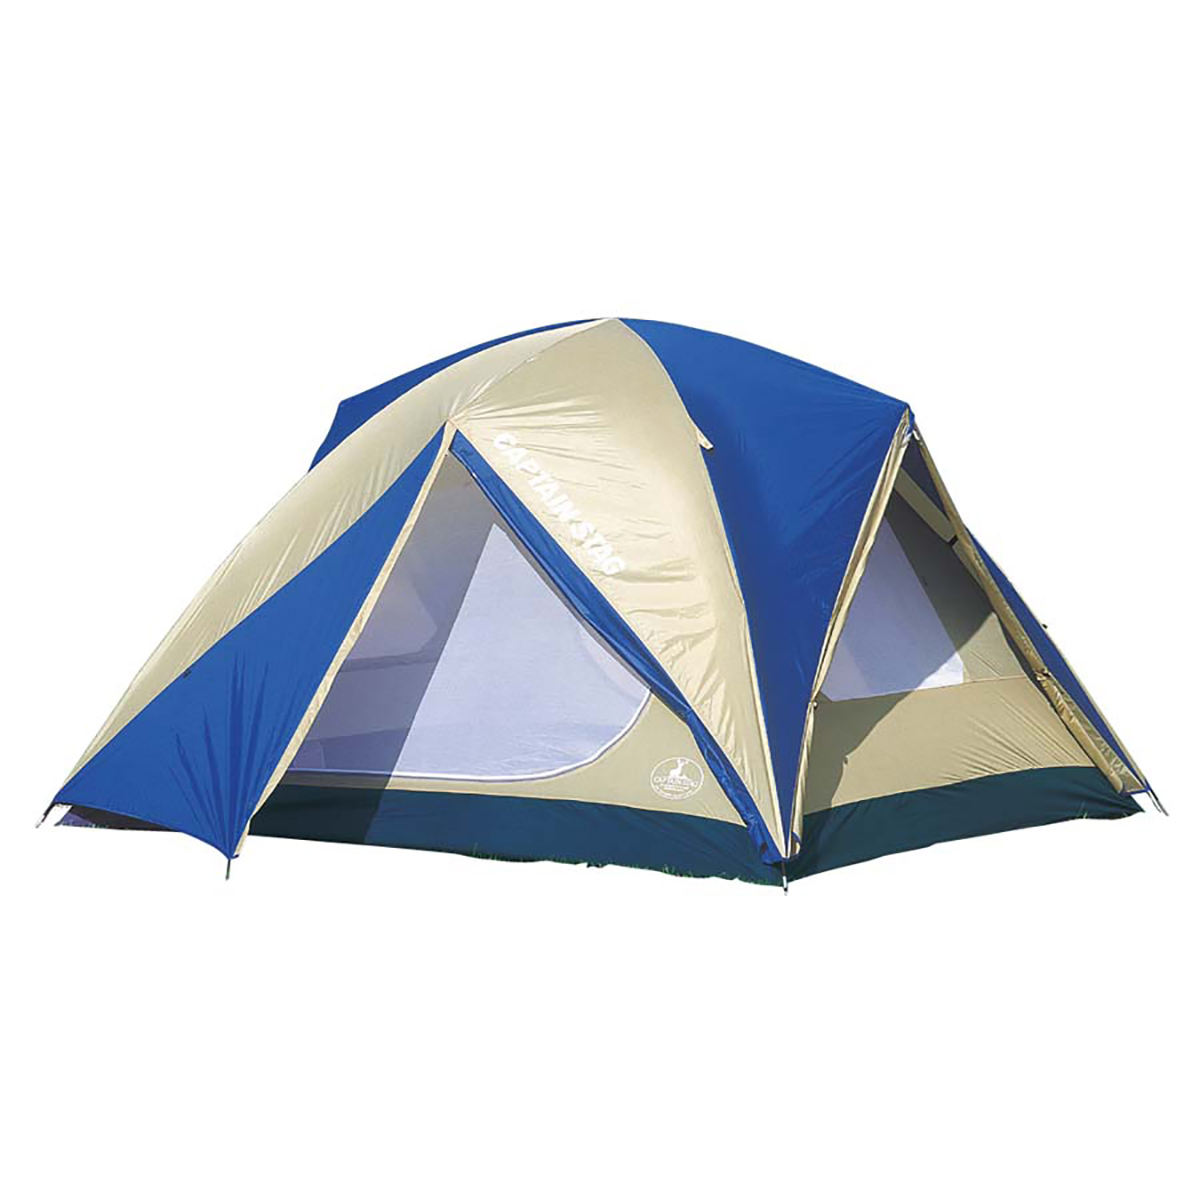 ドームテントを選ぶ | テントの種類と選び方 | アウトドアお役立ち情報